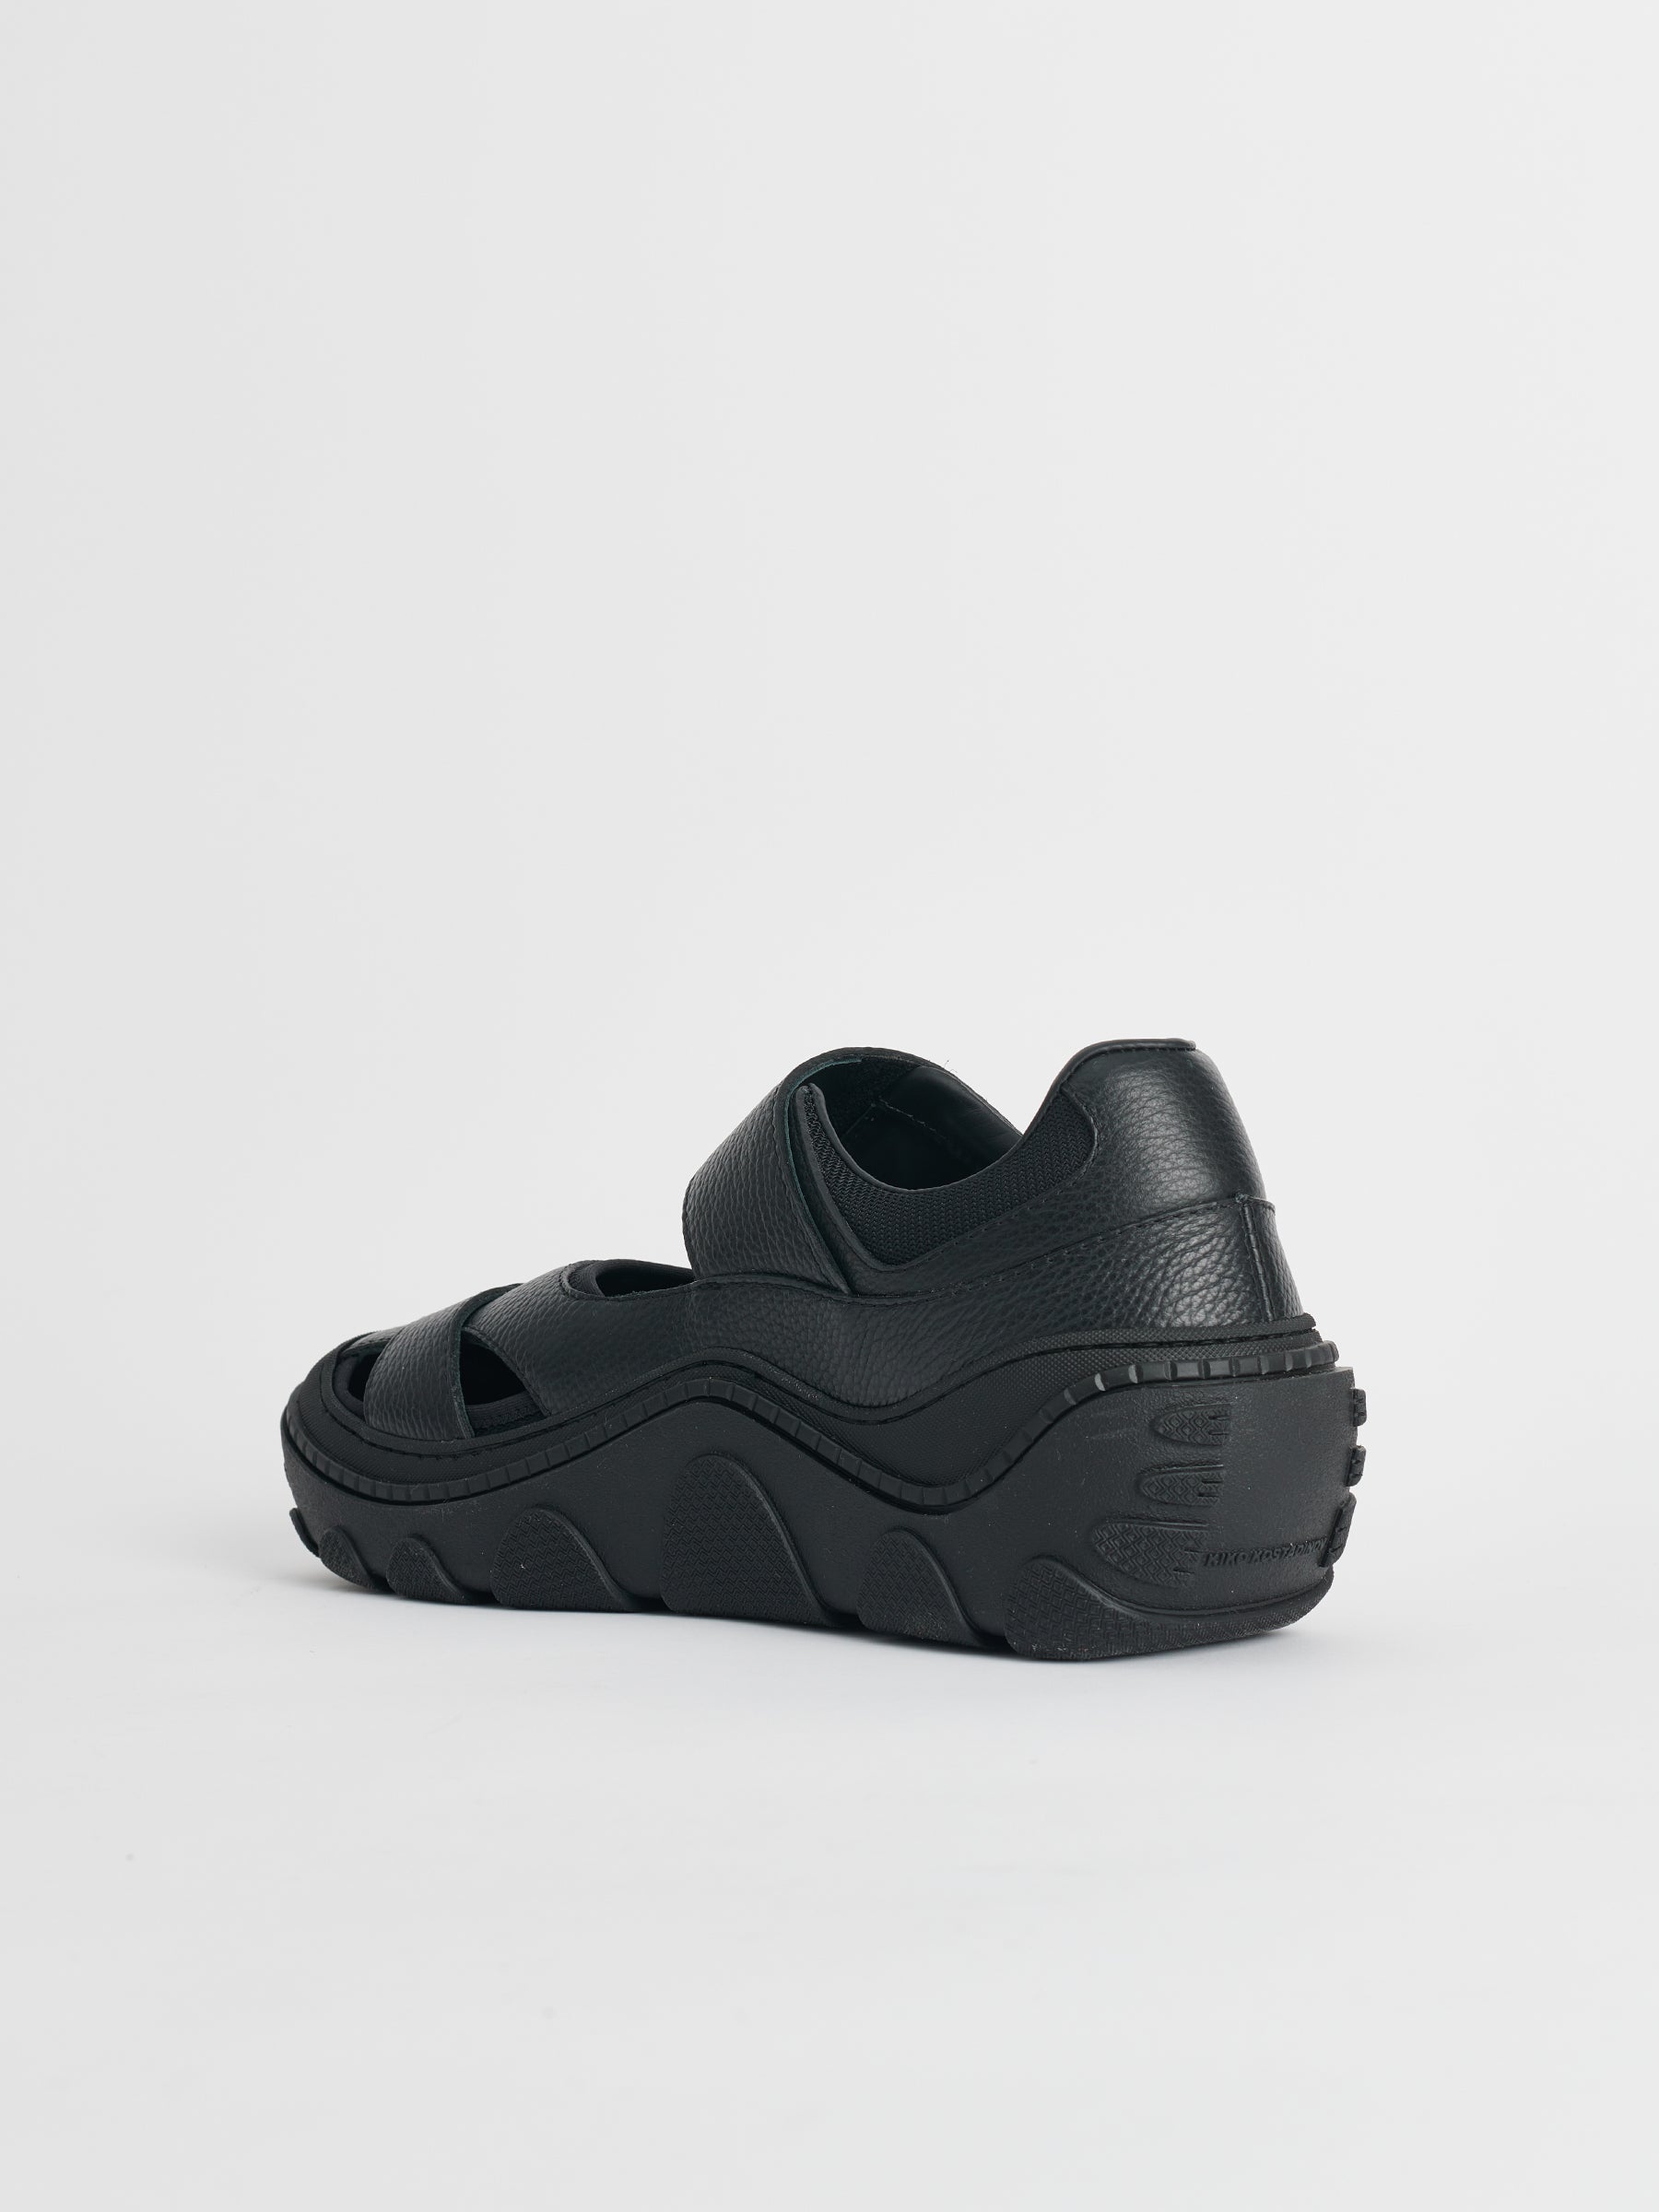 Kiko Kostadinov Sandal Hybrid Black Soot